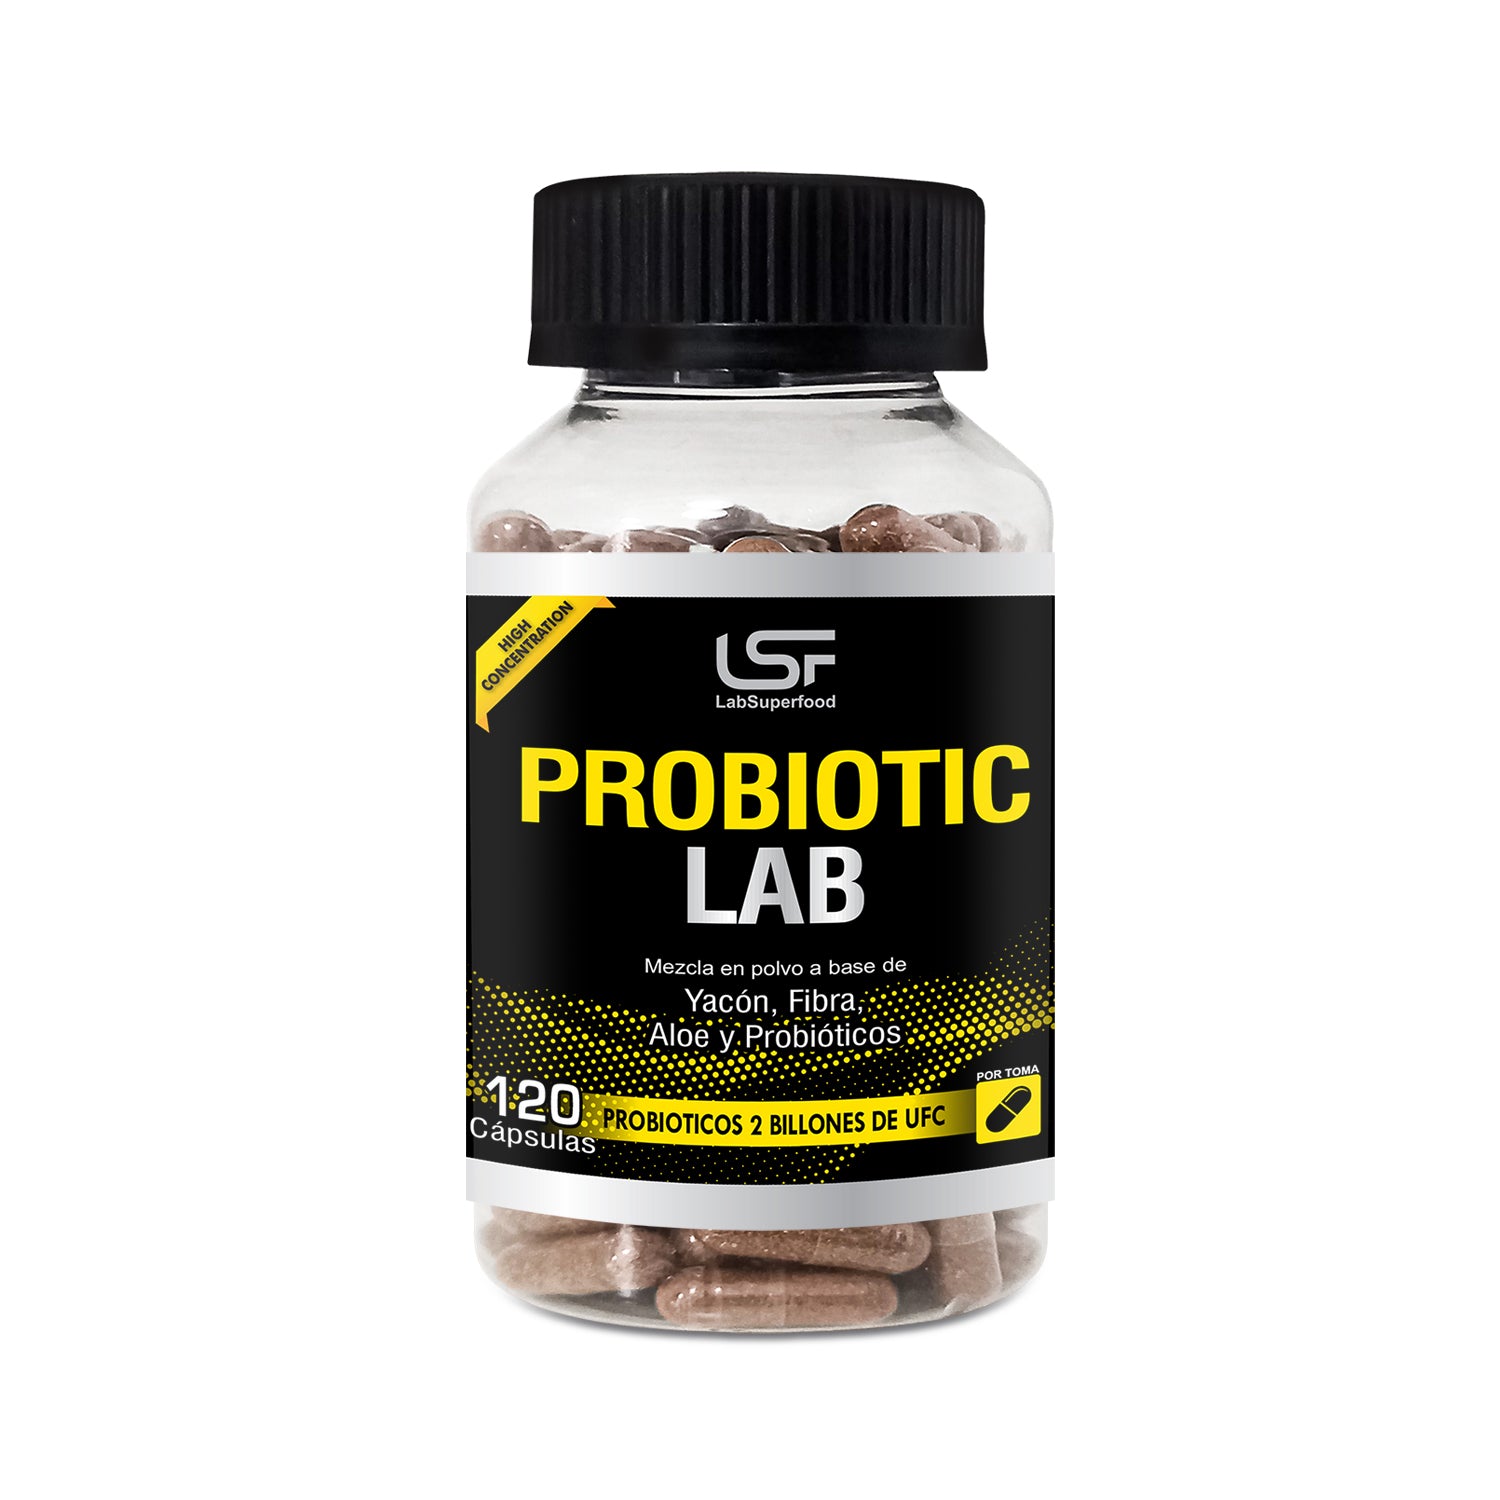 ProbioticLab - 120 capsules